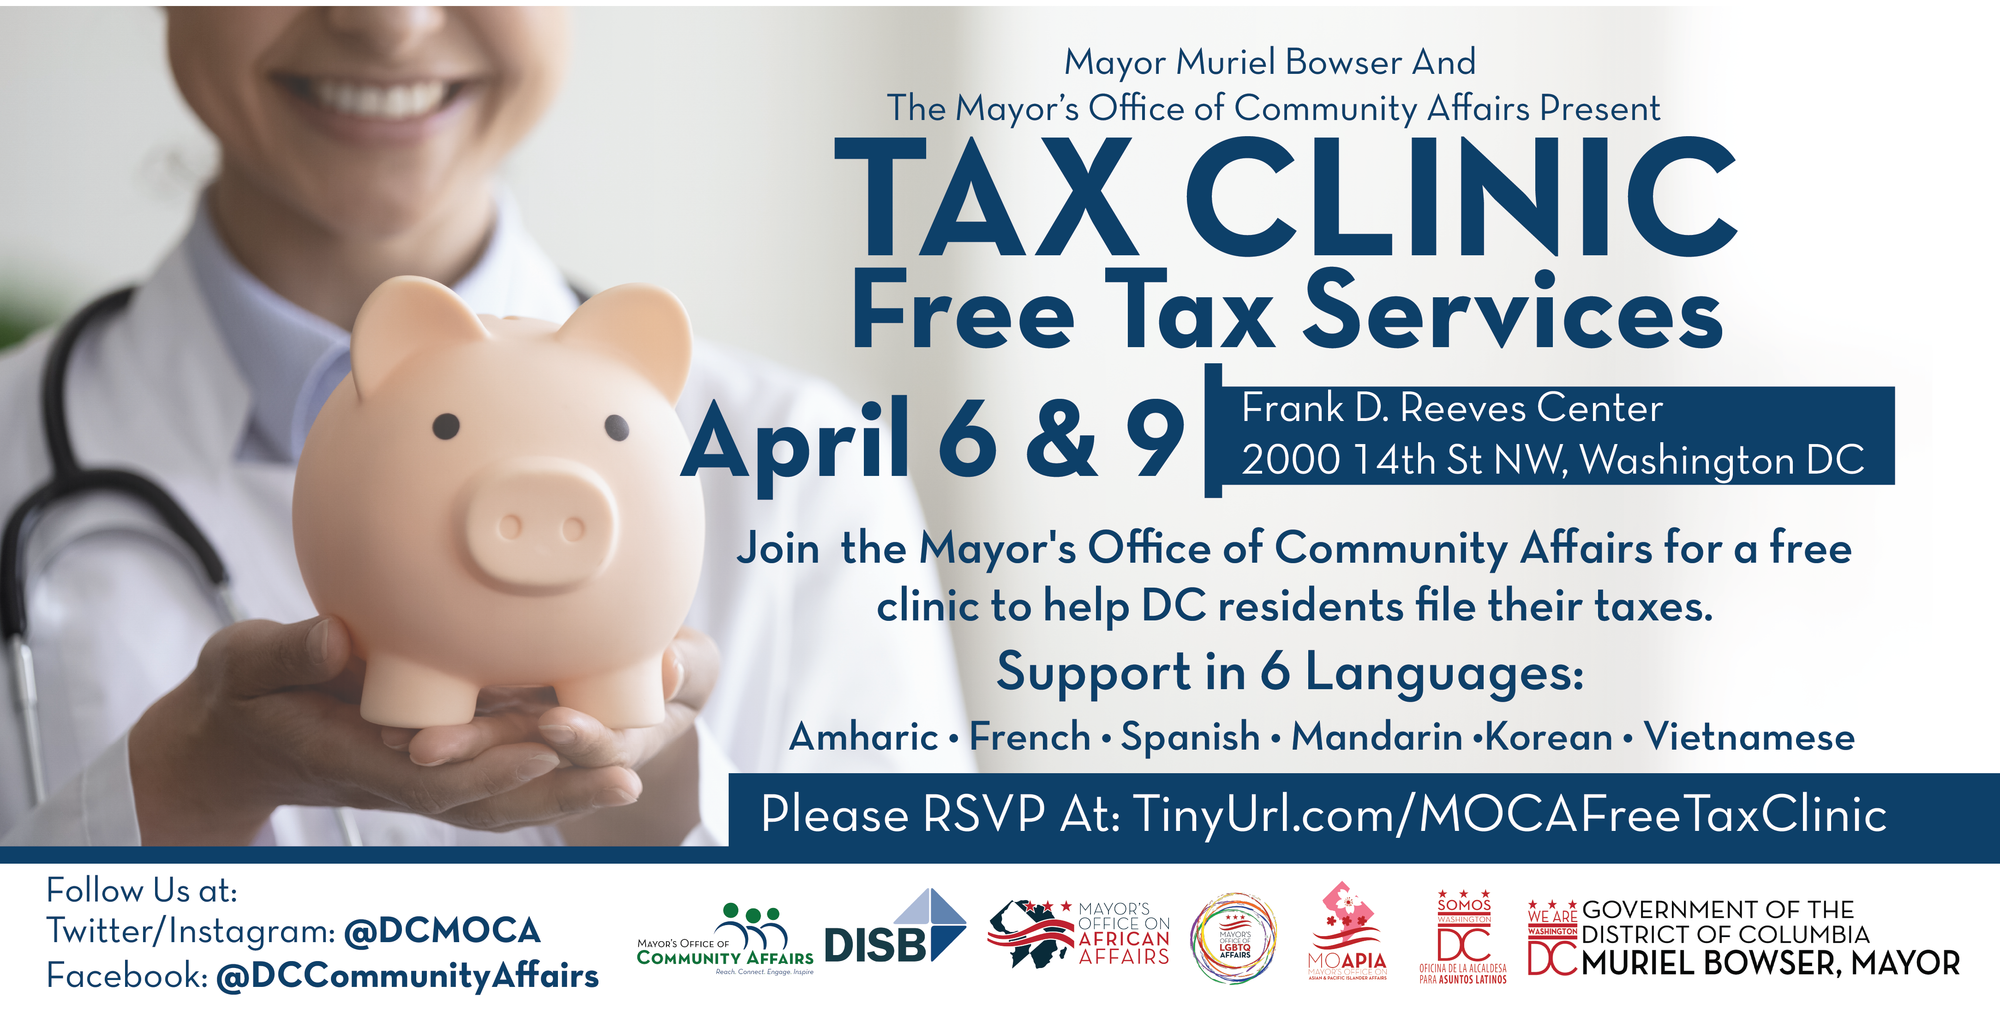 MOCA Free Tax Clinic